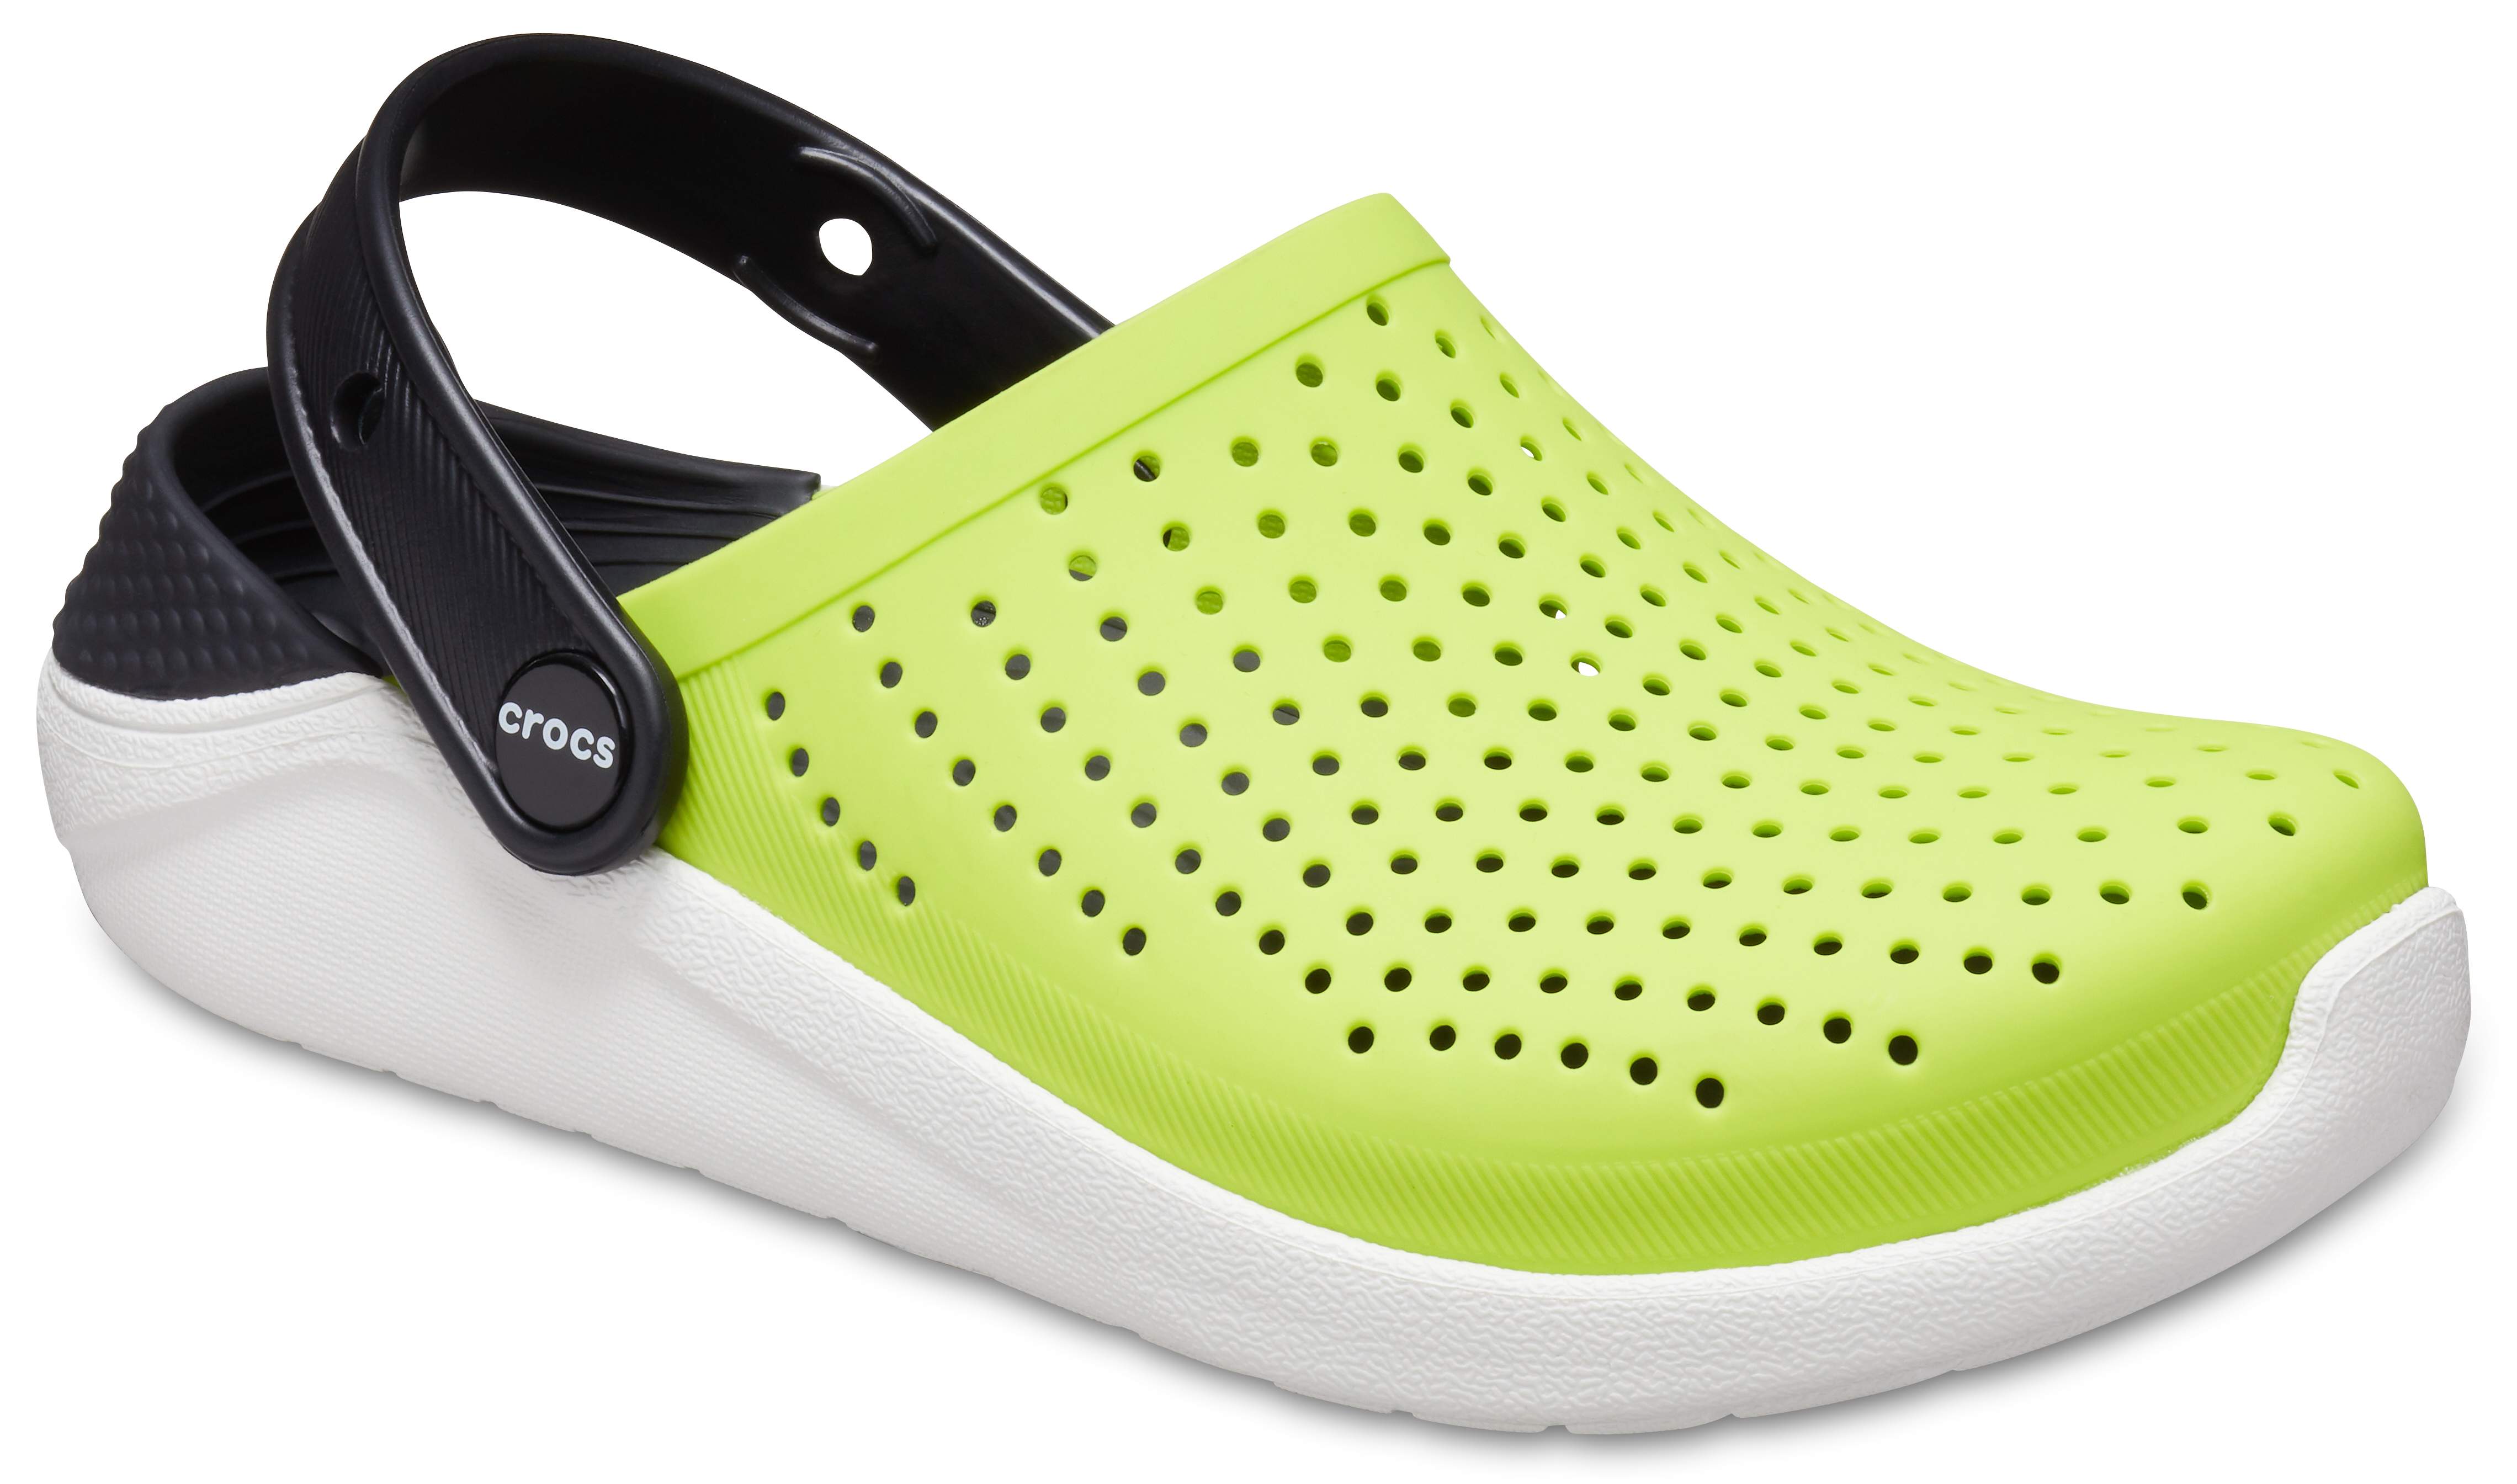 crocs slippers for girls